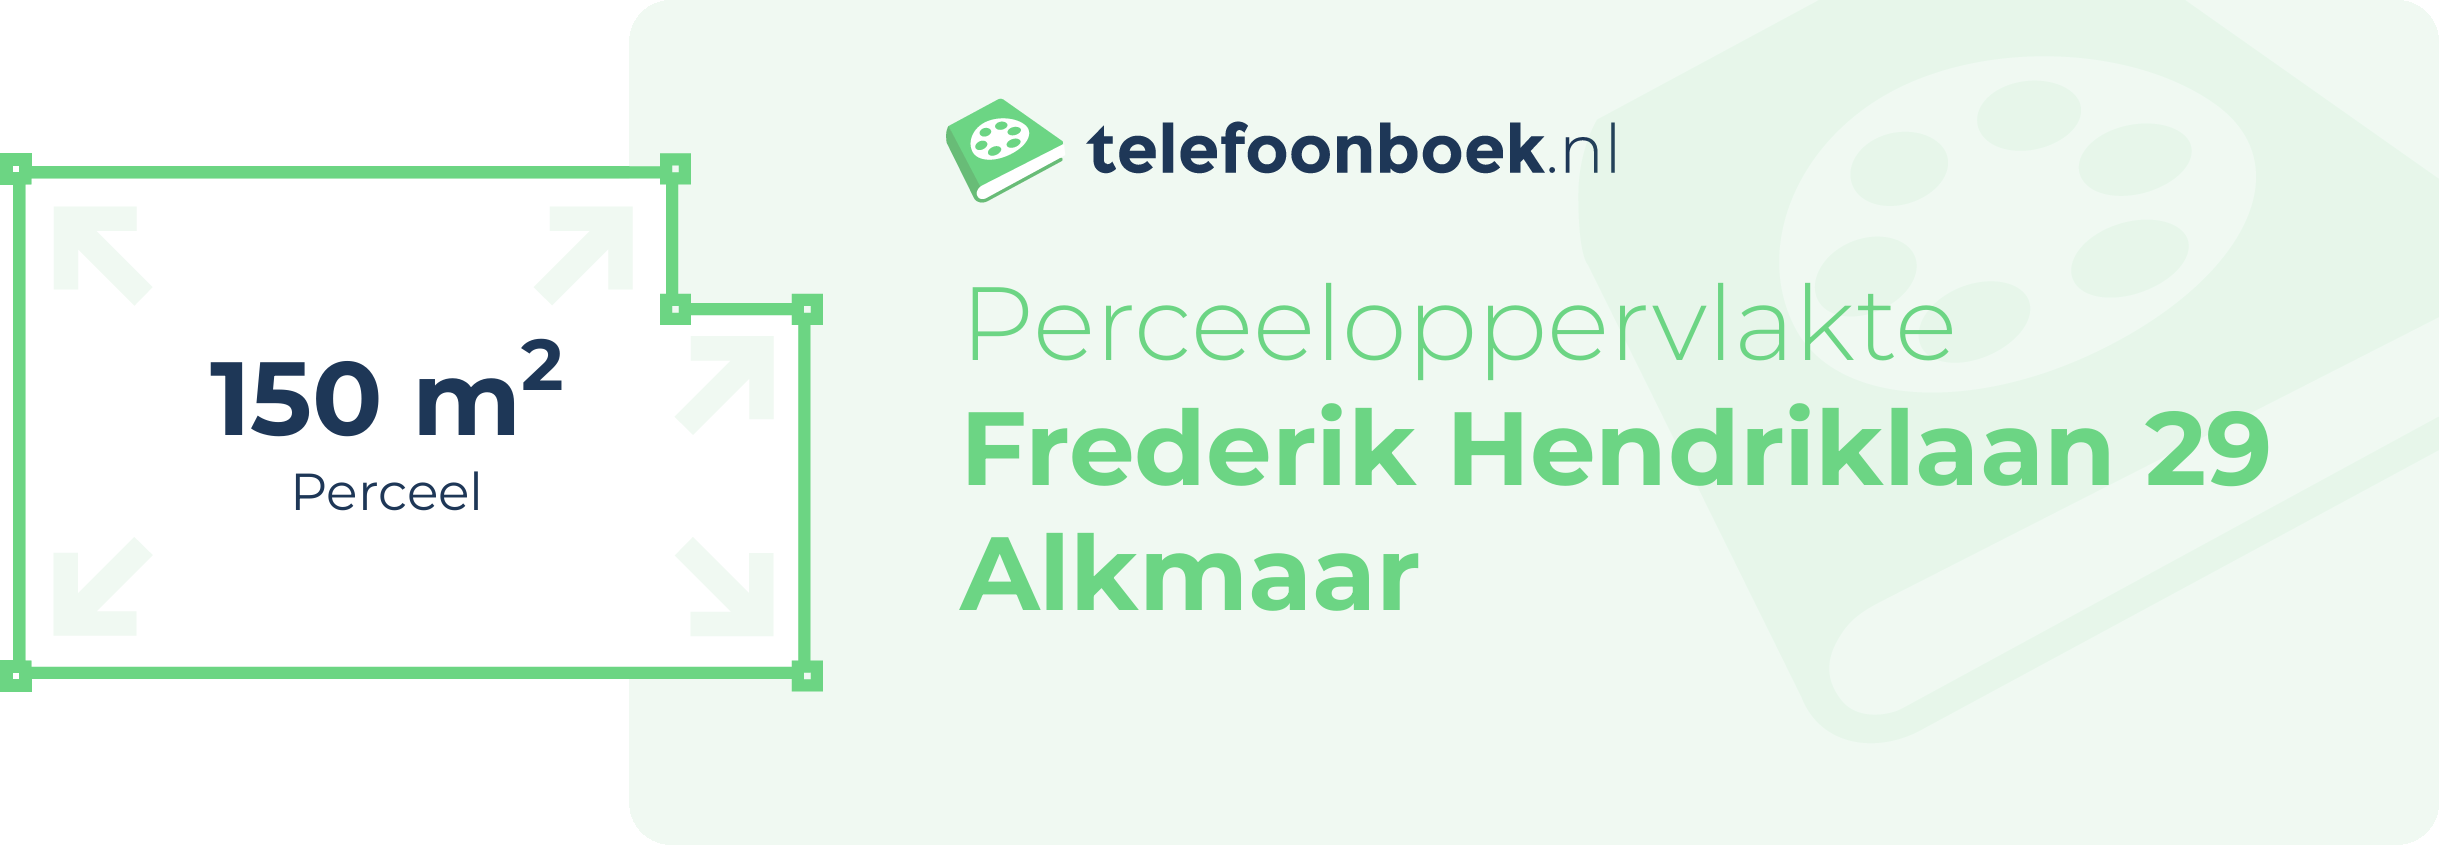 Perceeloppervlakte Frederik Hendriklaan 29 Alkmaar